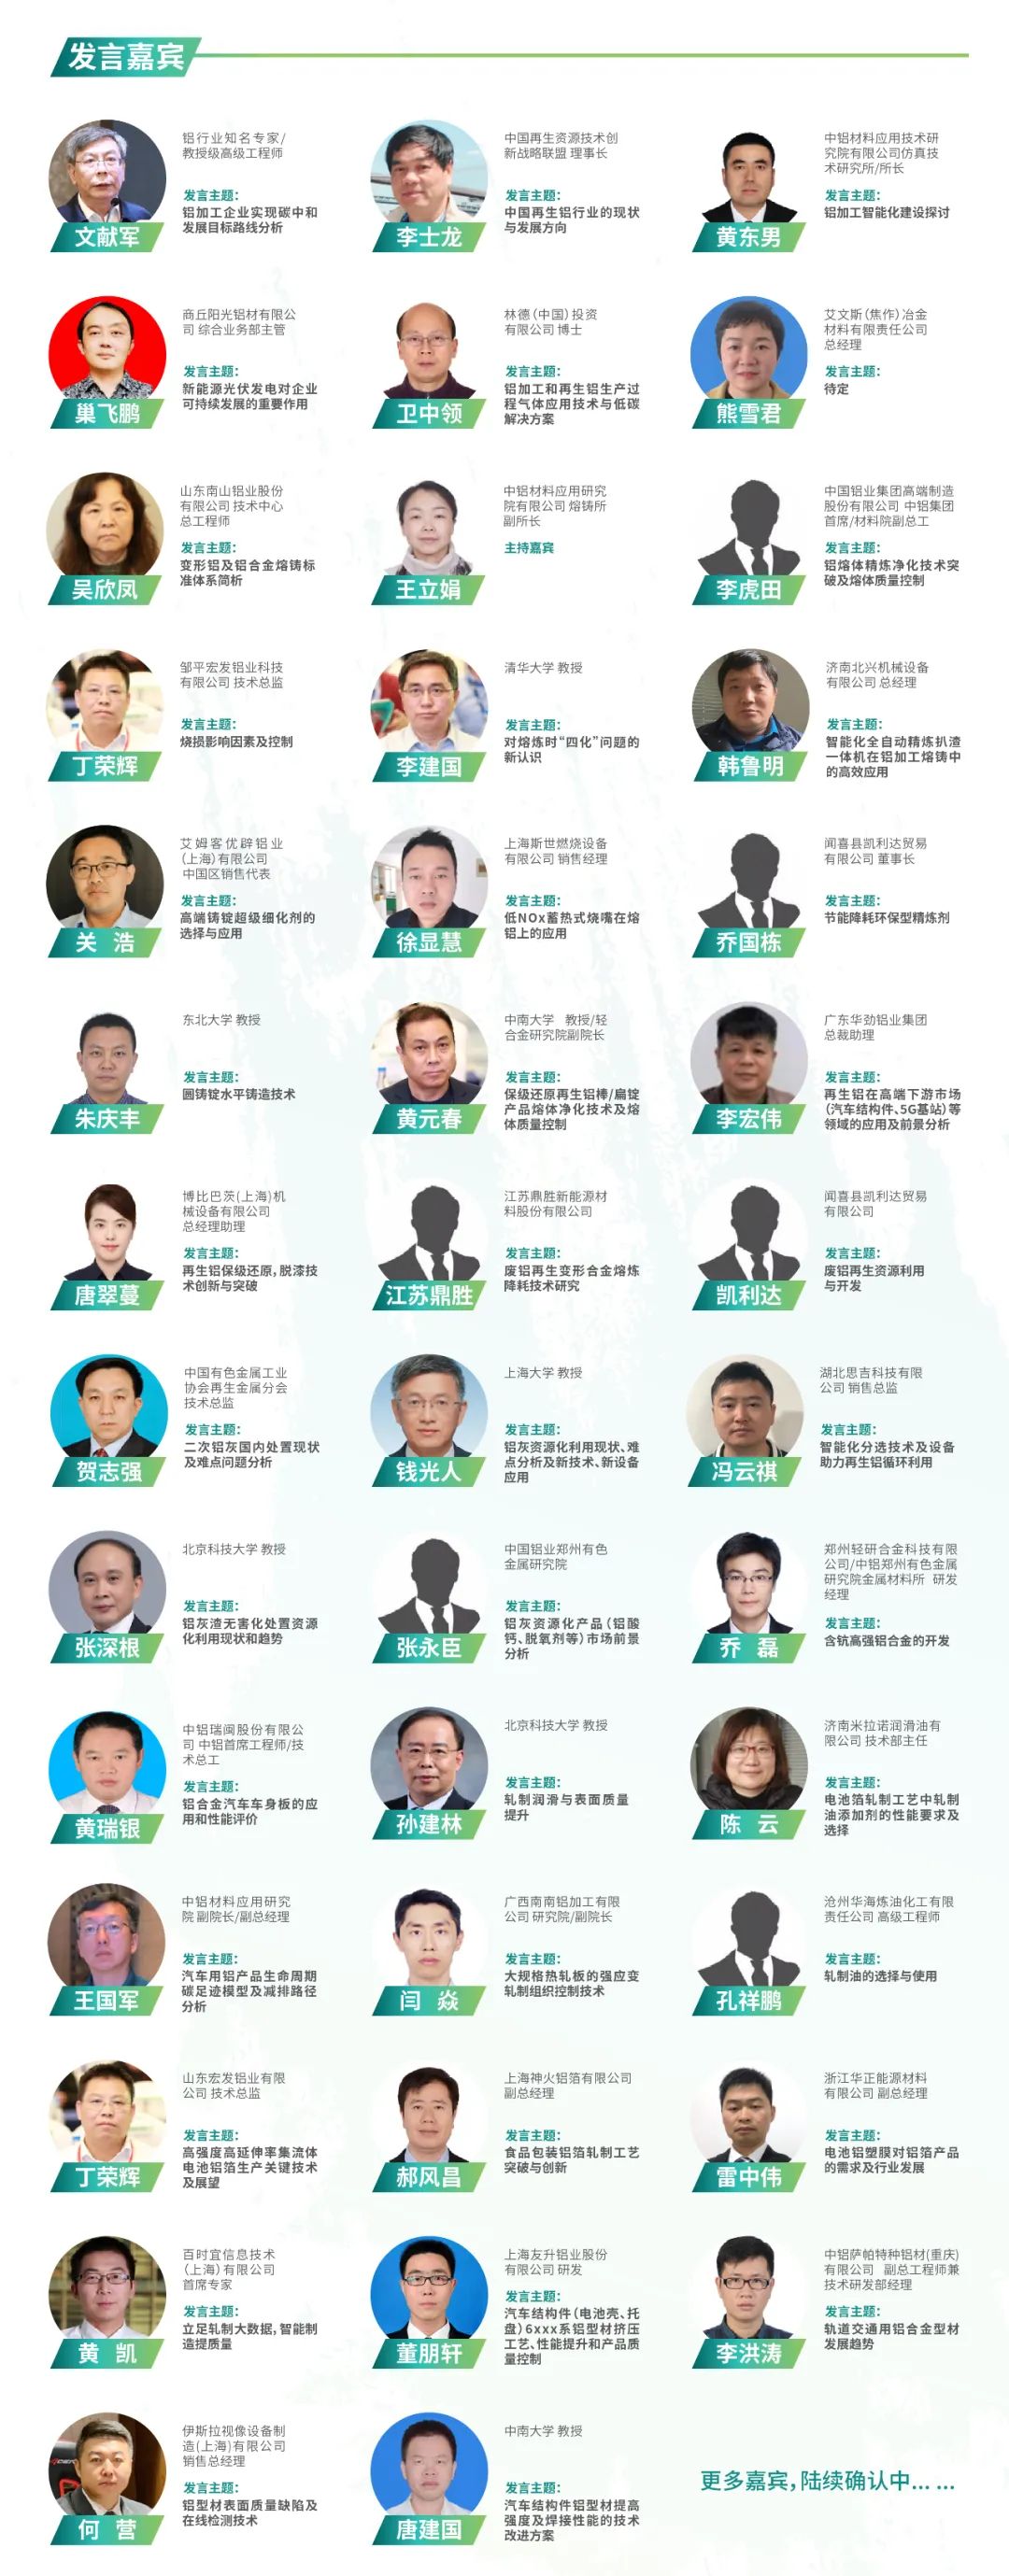 延期通知 I 易贸・2022（第九届）中国国际铝加工及再 生铝技术大会于4月27-28日杭州召开